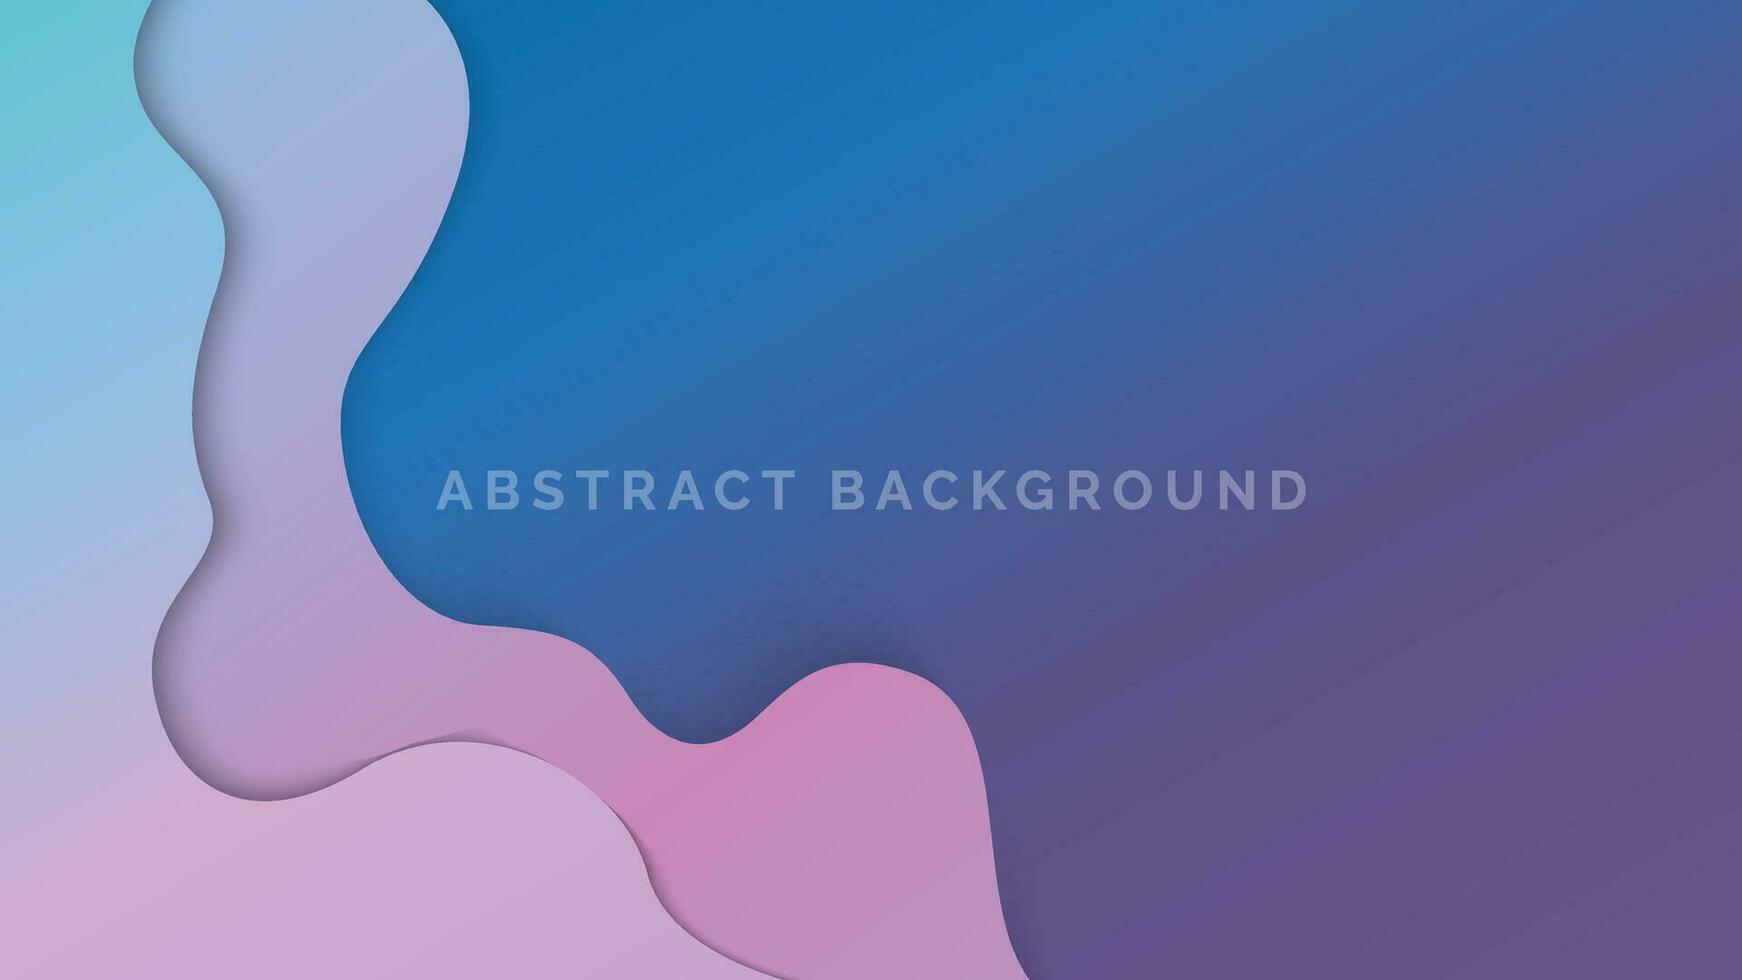 kleurrijk blauw en roze helling meetkundig abstract achtergrond met Golf lijn vector